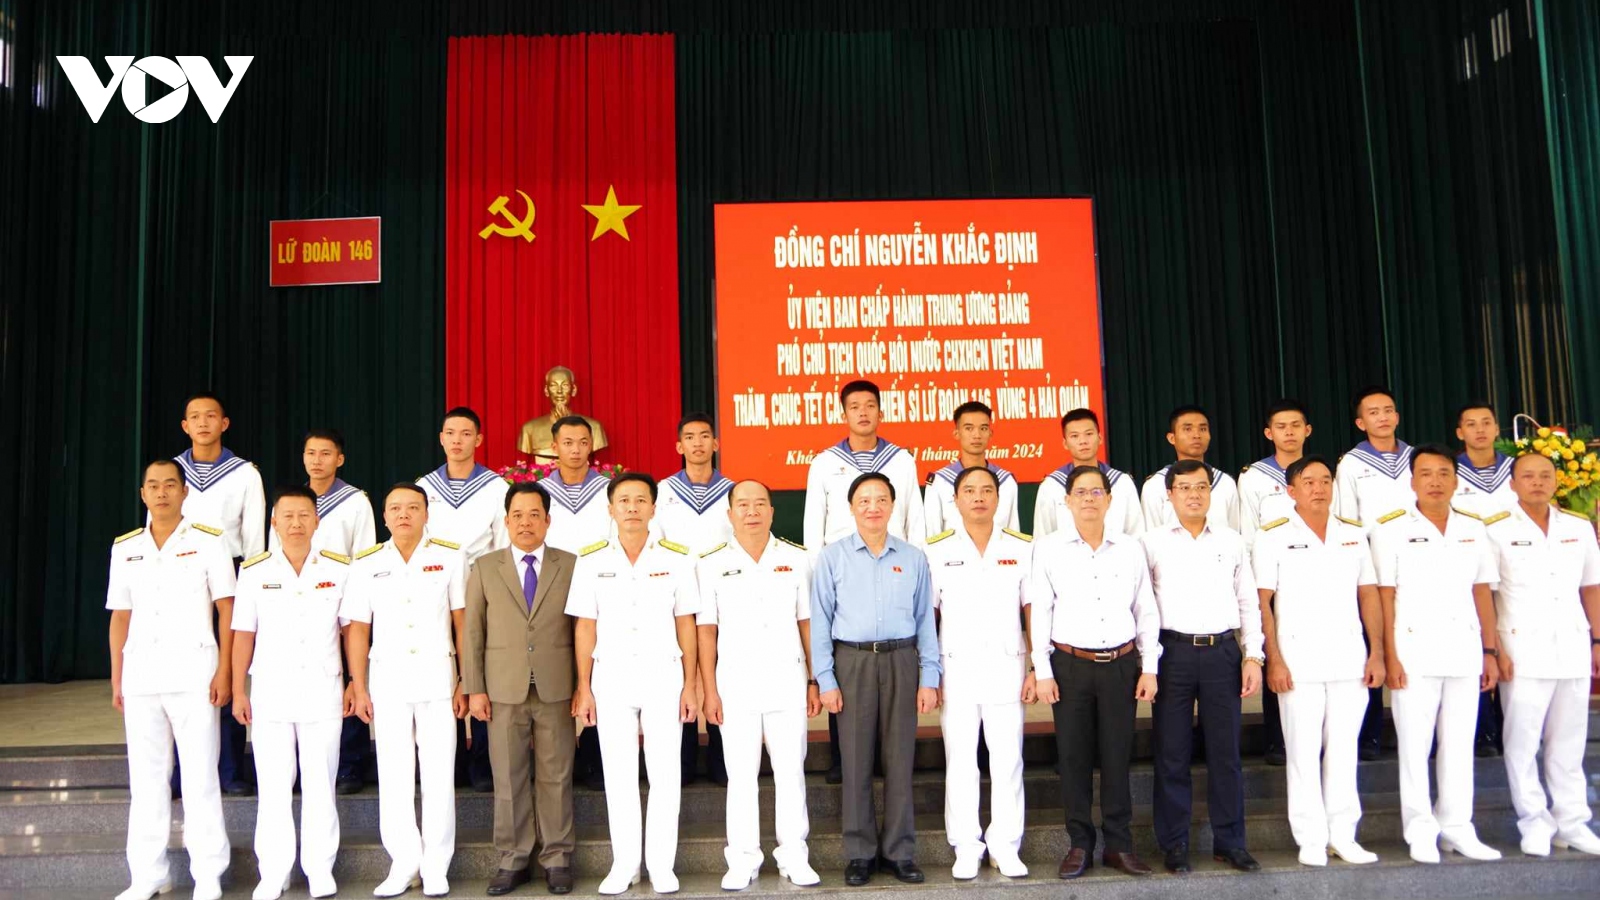 Phó Chủ tịch Quốc hội Nguyễn Khắc Định thăm và chúc Tết đoàn Trường Sa